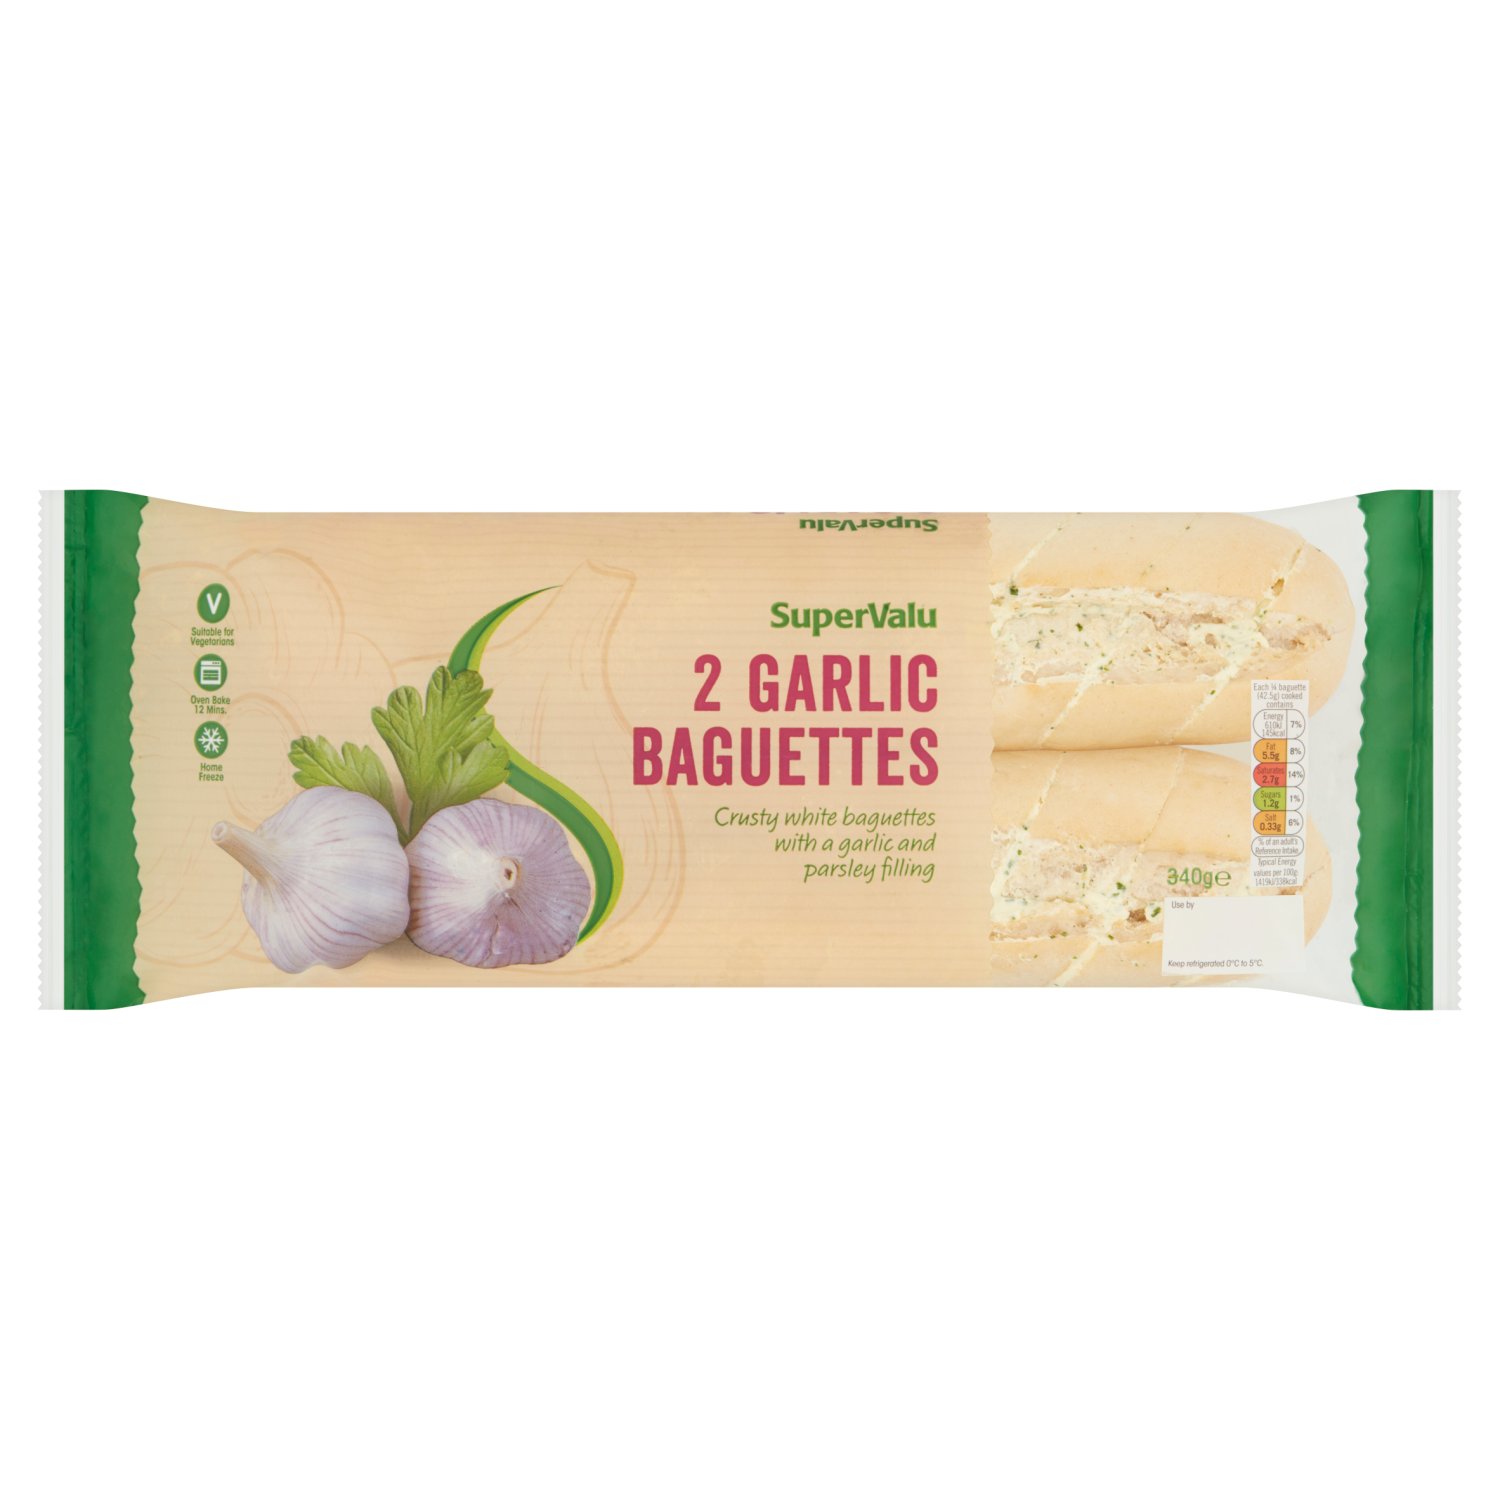 SuperValu Garlic Baguettes 2 Pack (340 g)